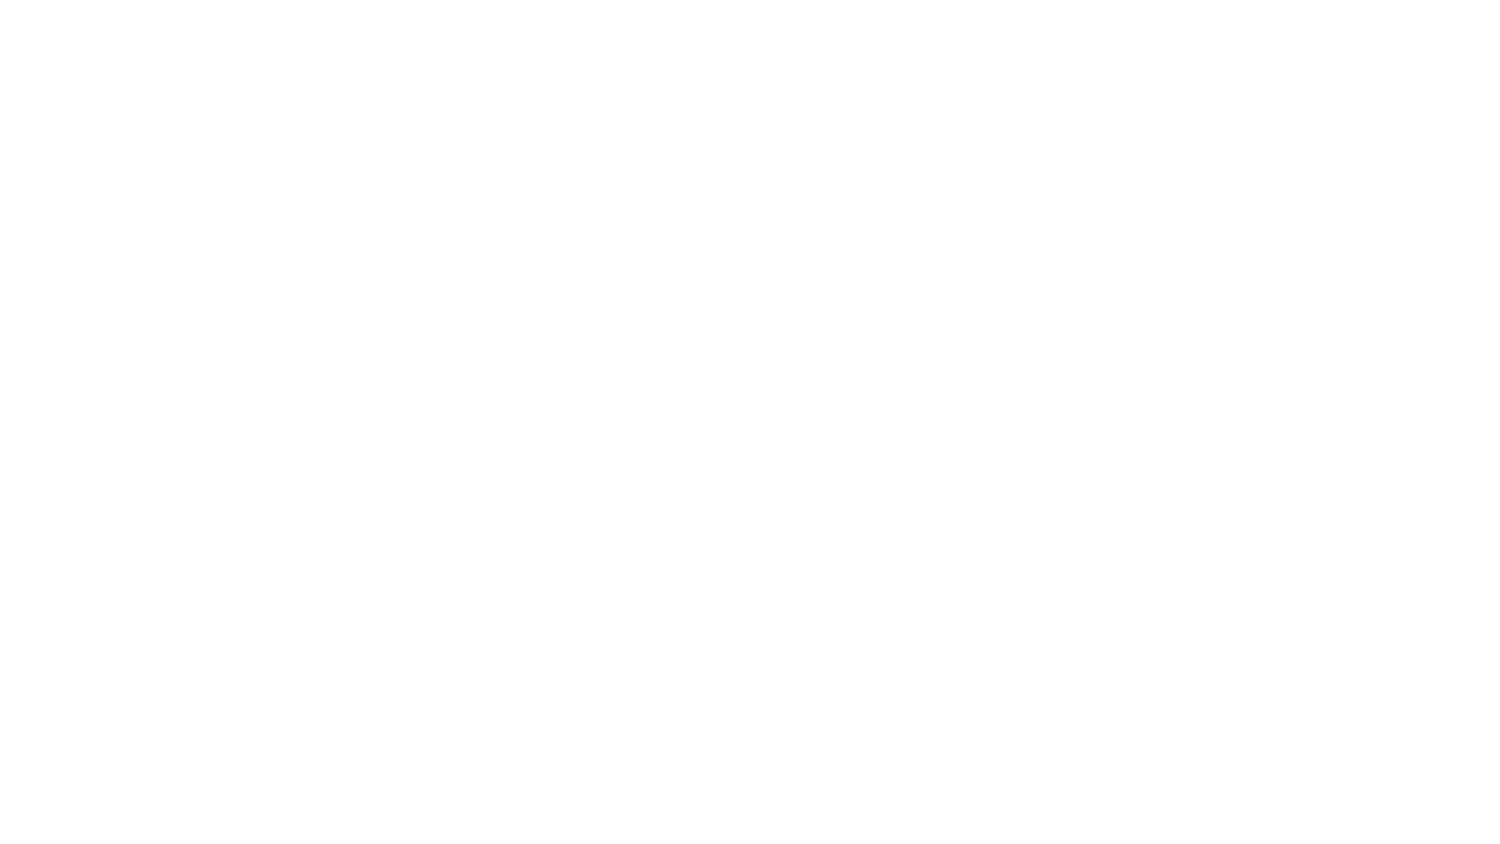 BYVFX